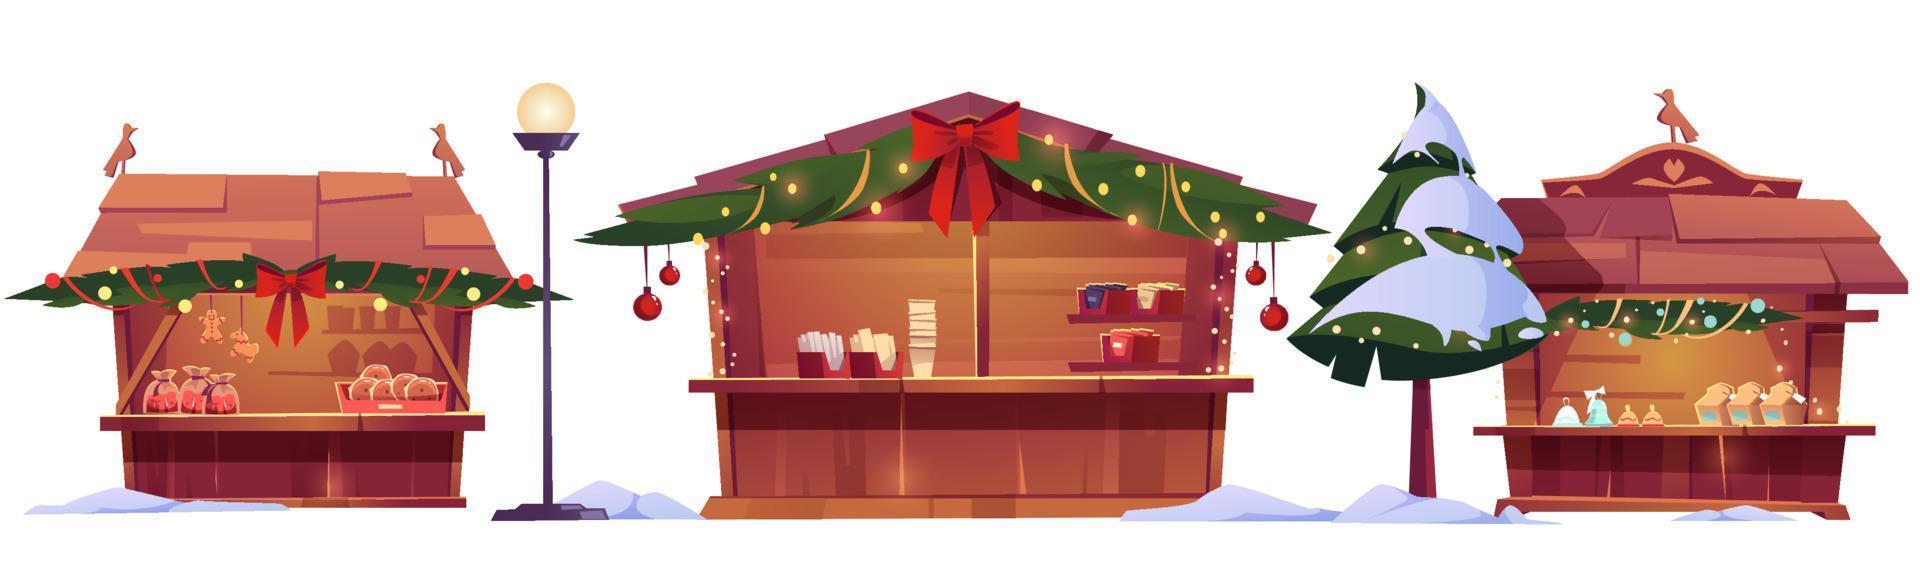 Kerstmis markt kraampjes, straat eerlijk houten cabines vector